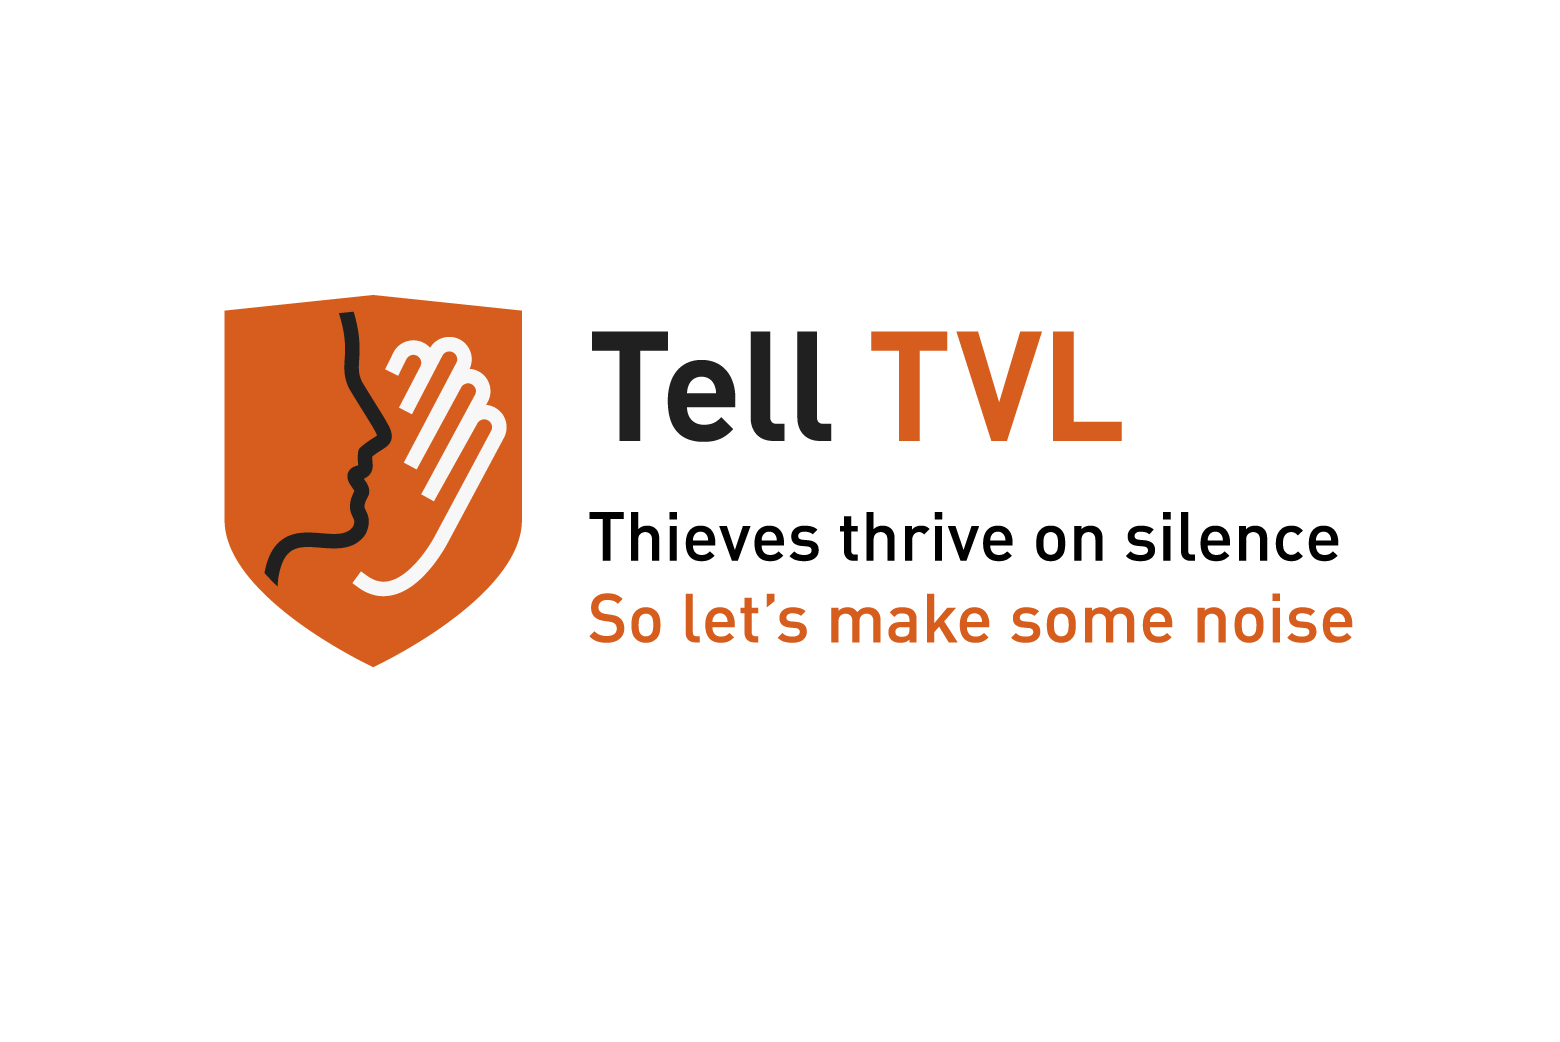 Tell TVL